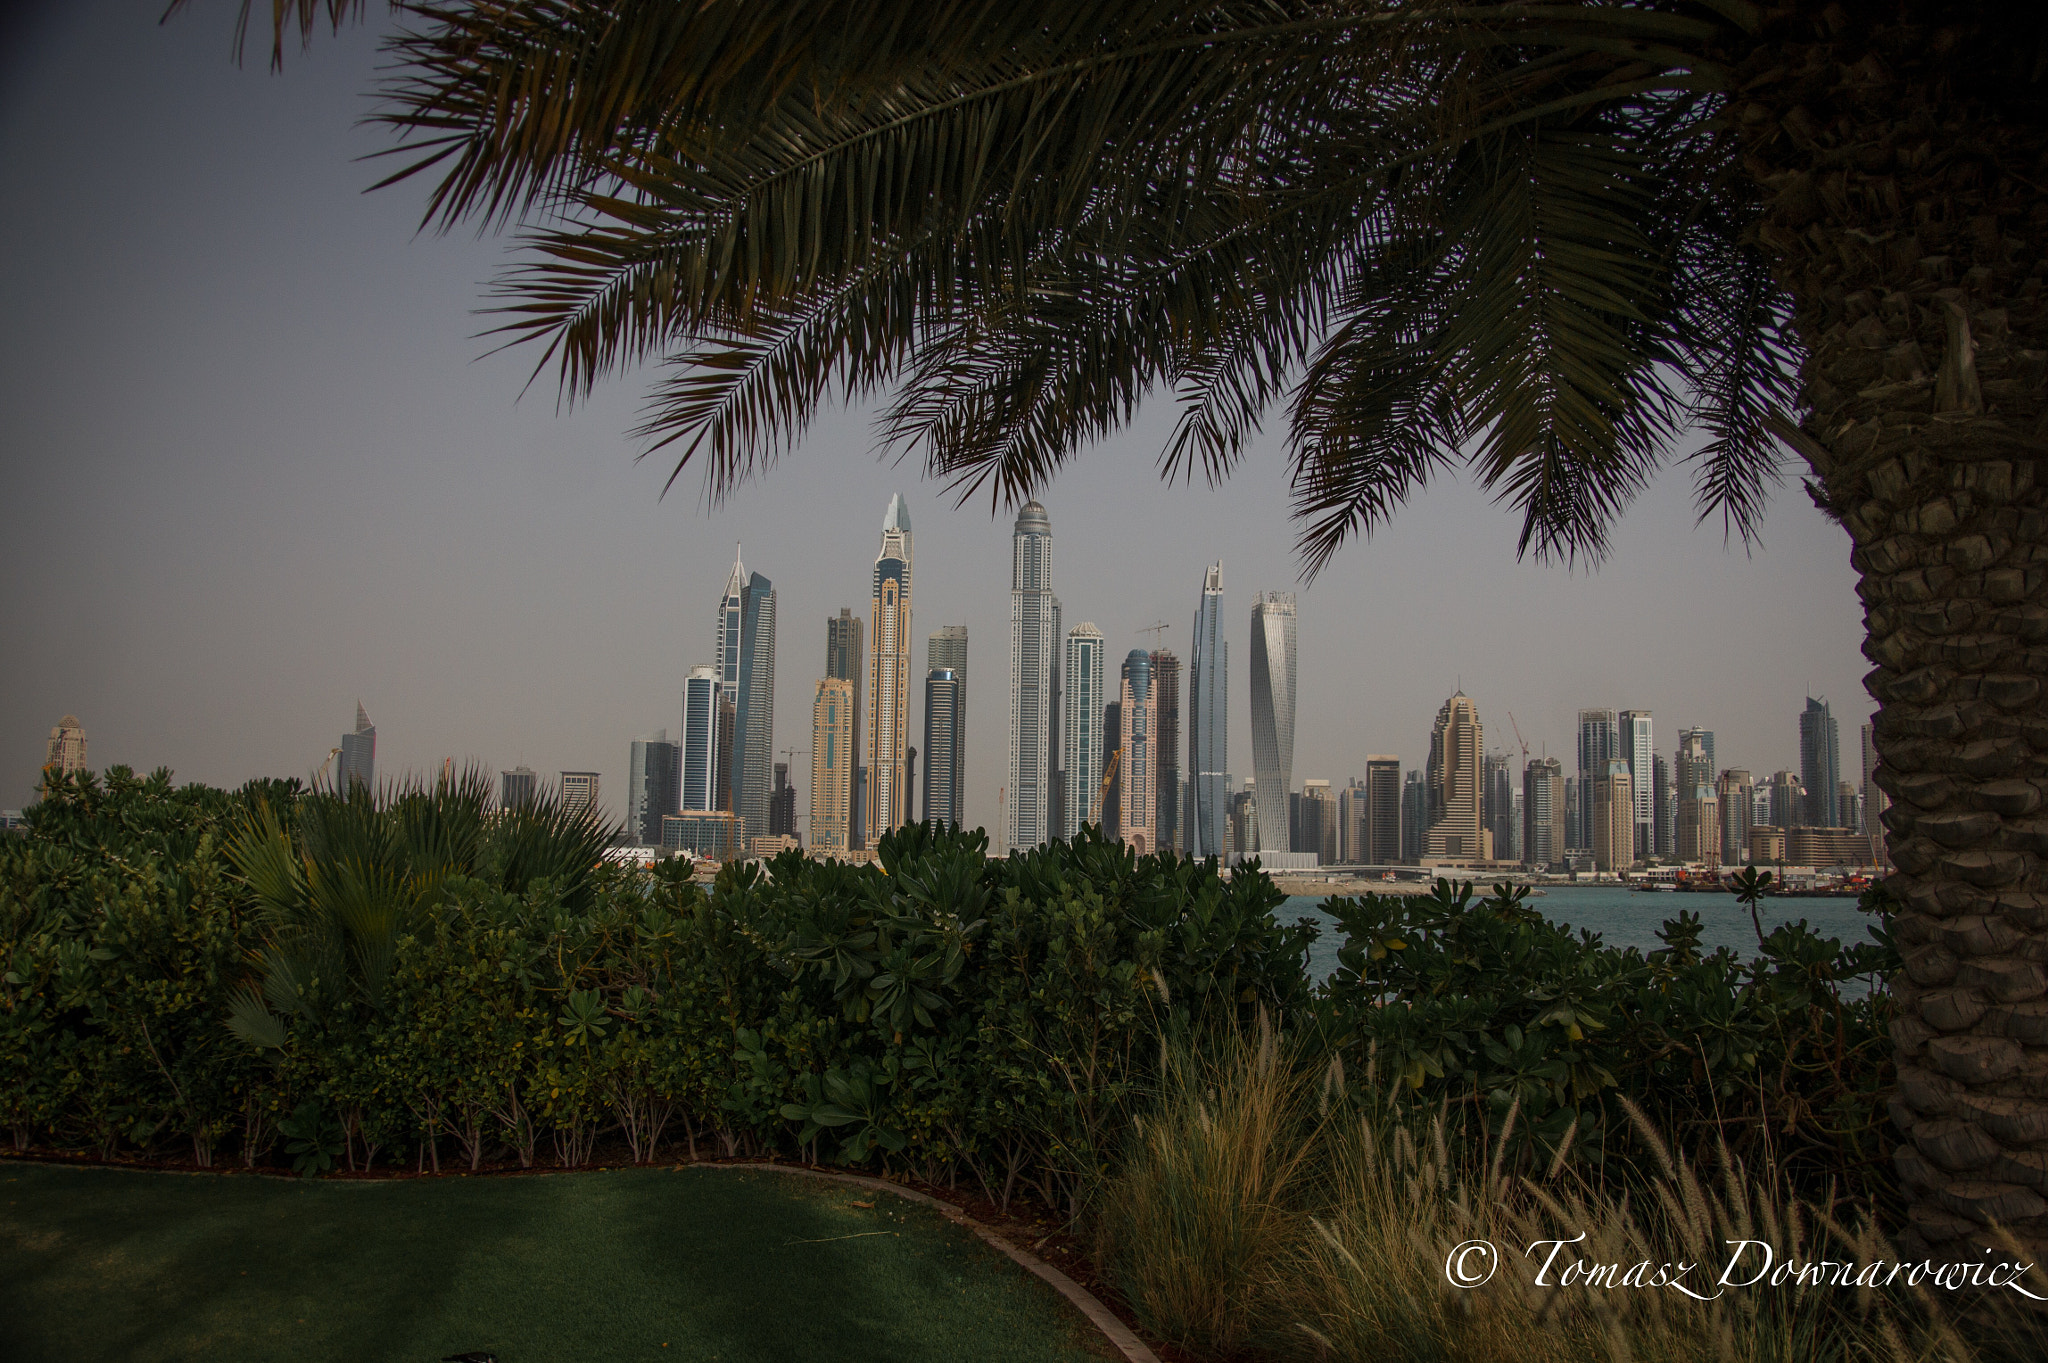 Sony Alpha DSLR-A550 sample photo. Dubai skyline photography